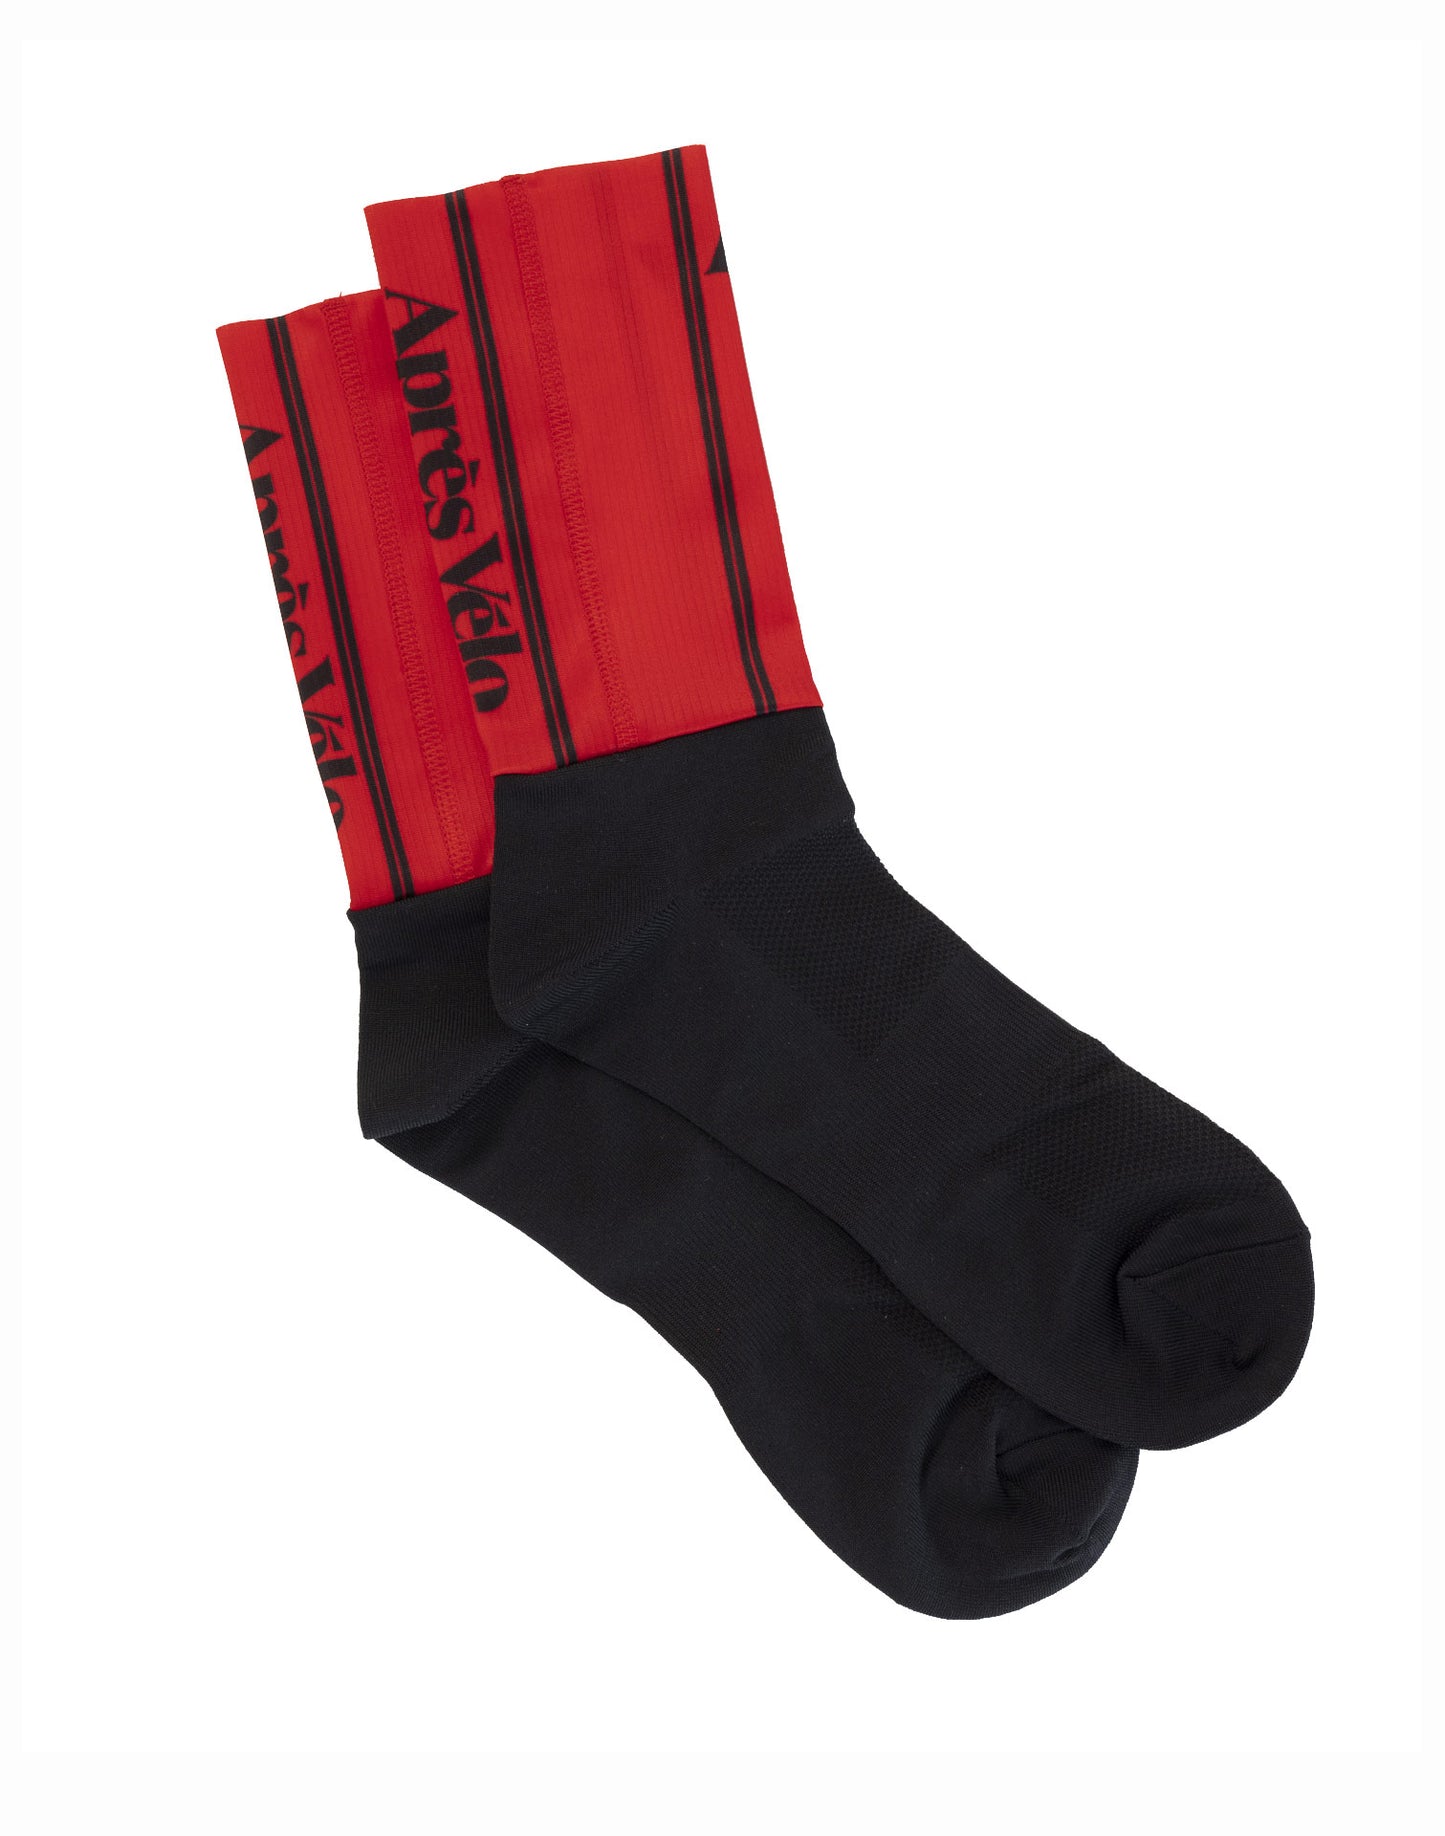 AV Race Red Cycling Socks